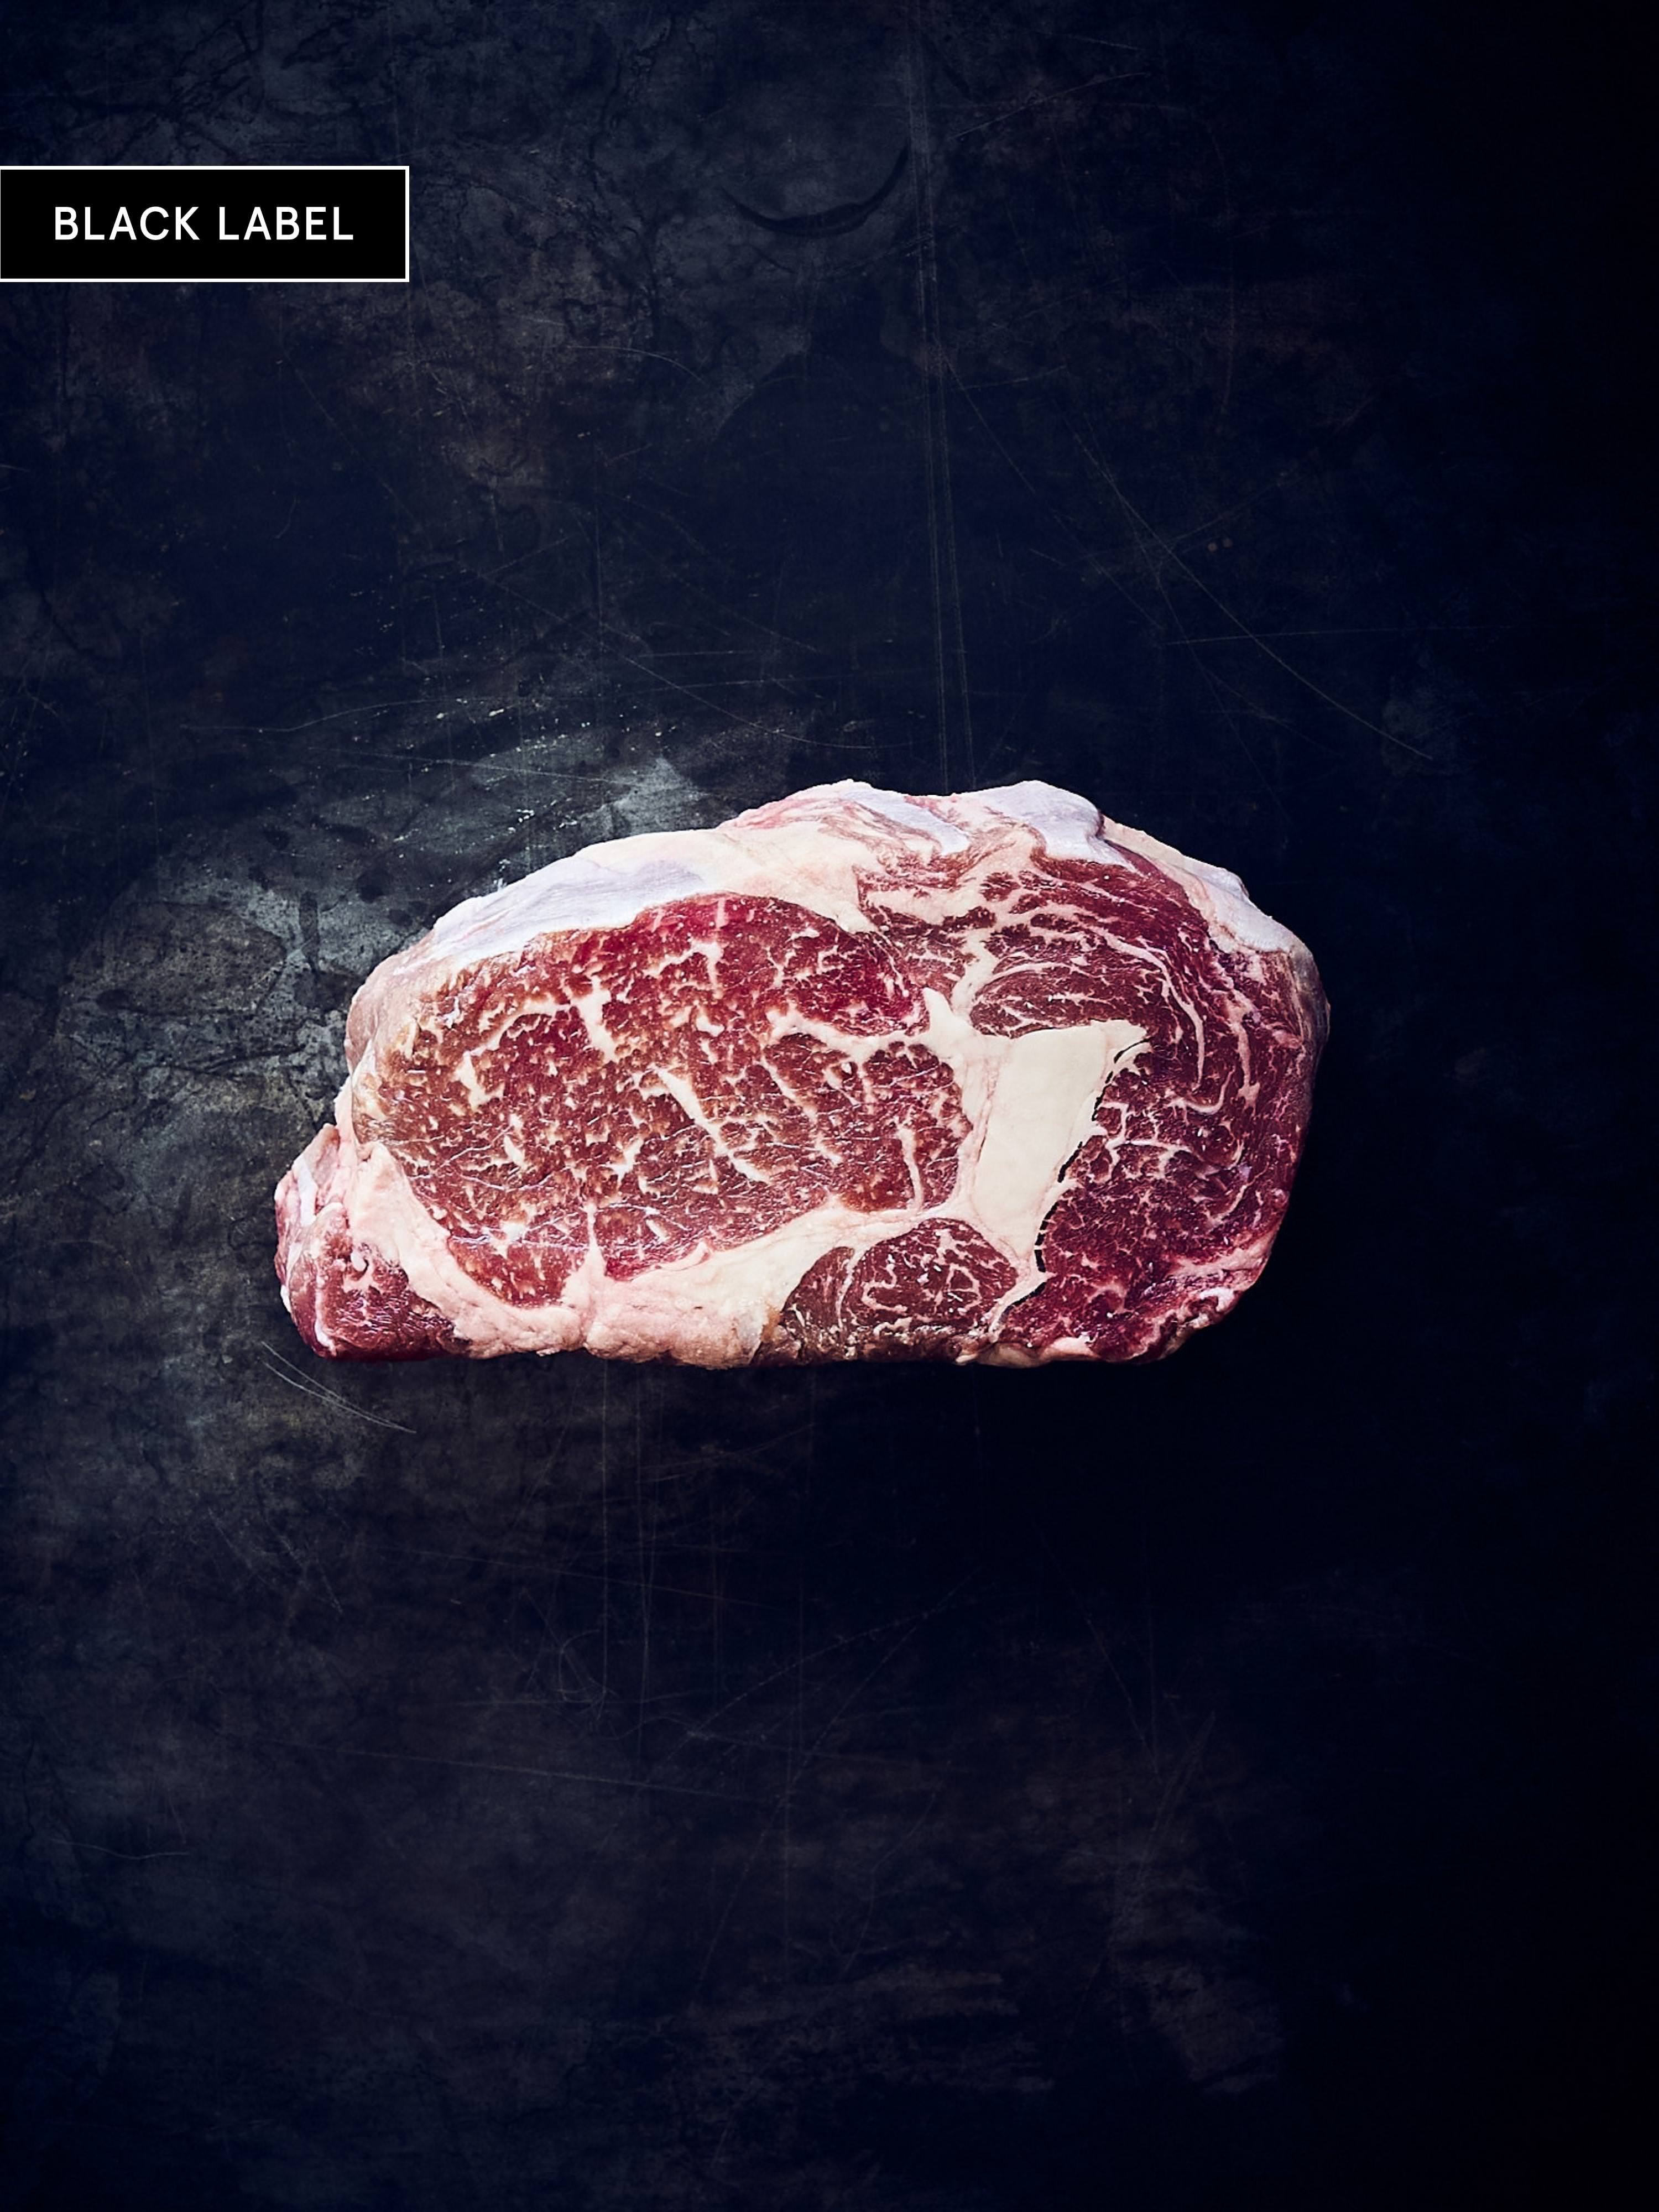 Stark marmoriertes Fitmeat Black Label Rib Eye Steak auf schwarzem Hintergrund